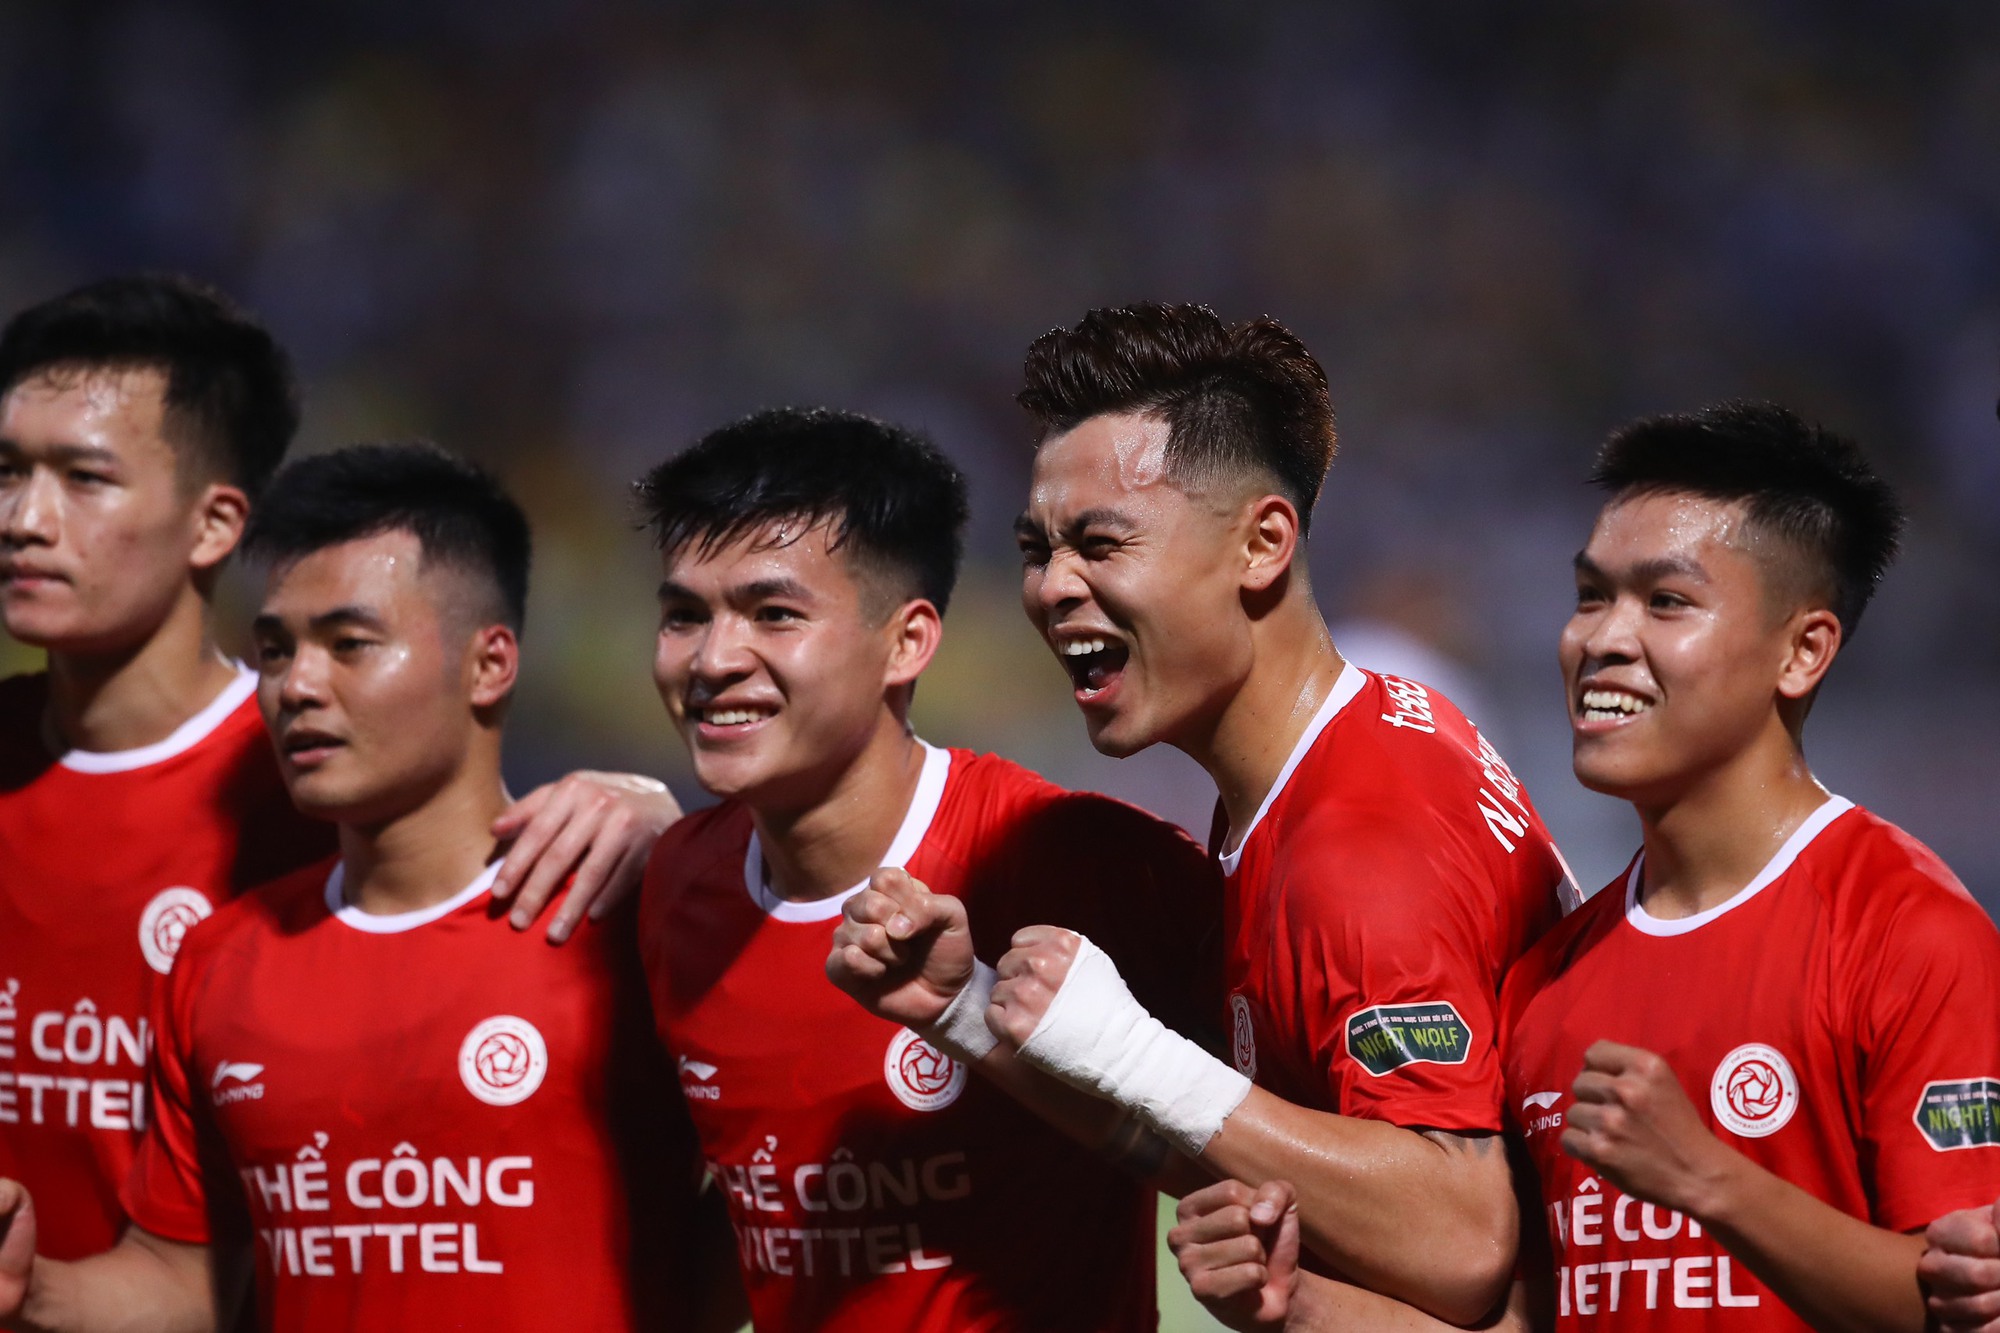 1.jpgĐánh bại CLB Nam Định, CLB Thể Công Viettel giúp cuộc đua giành ngôi vô địch V-League tiếp tục gay cấn